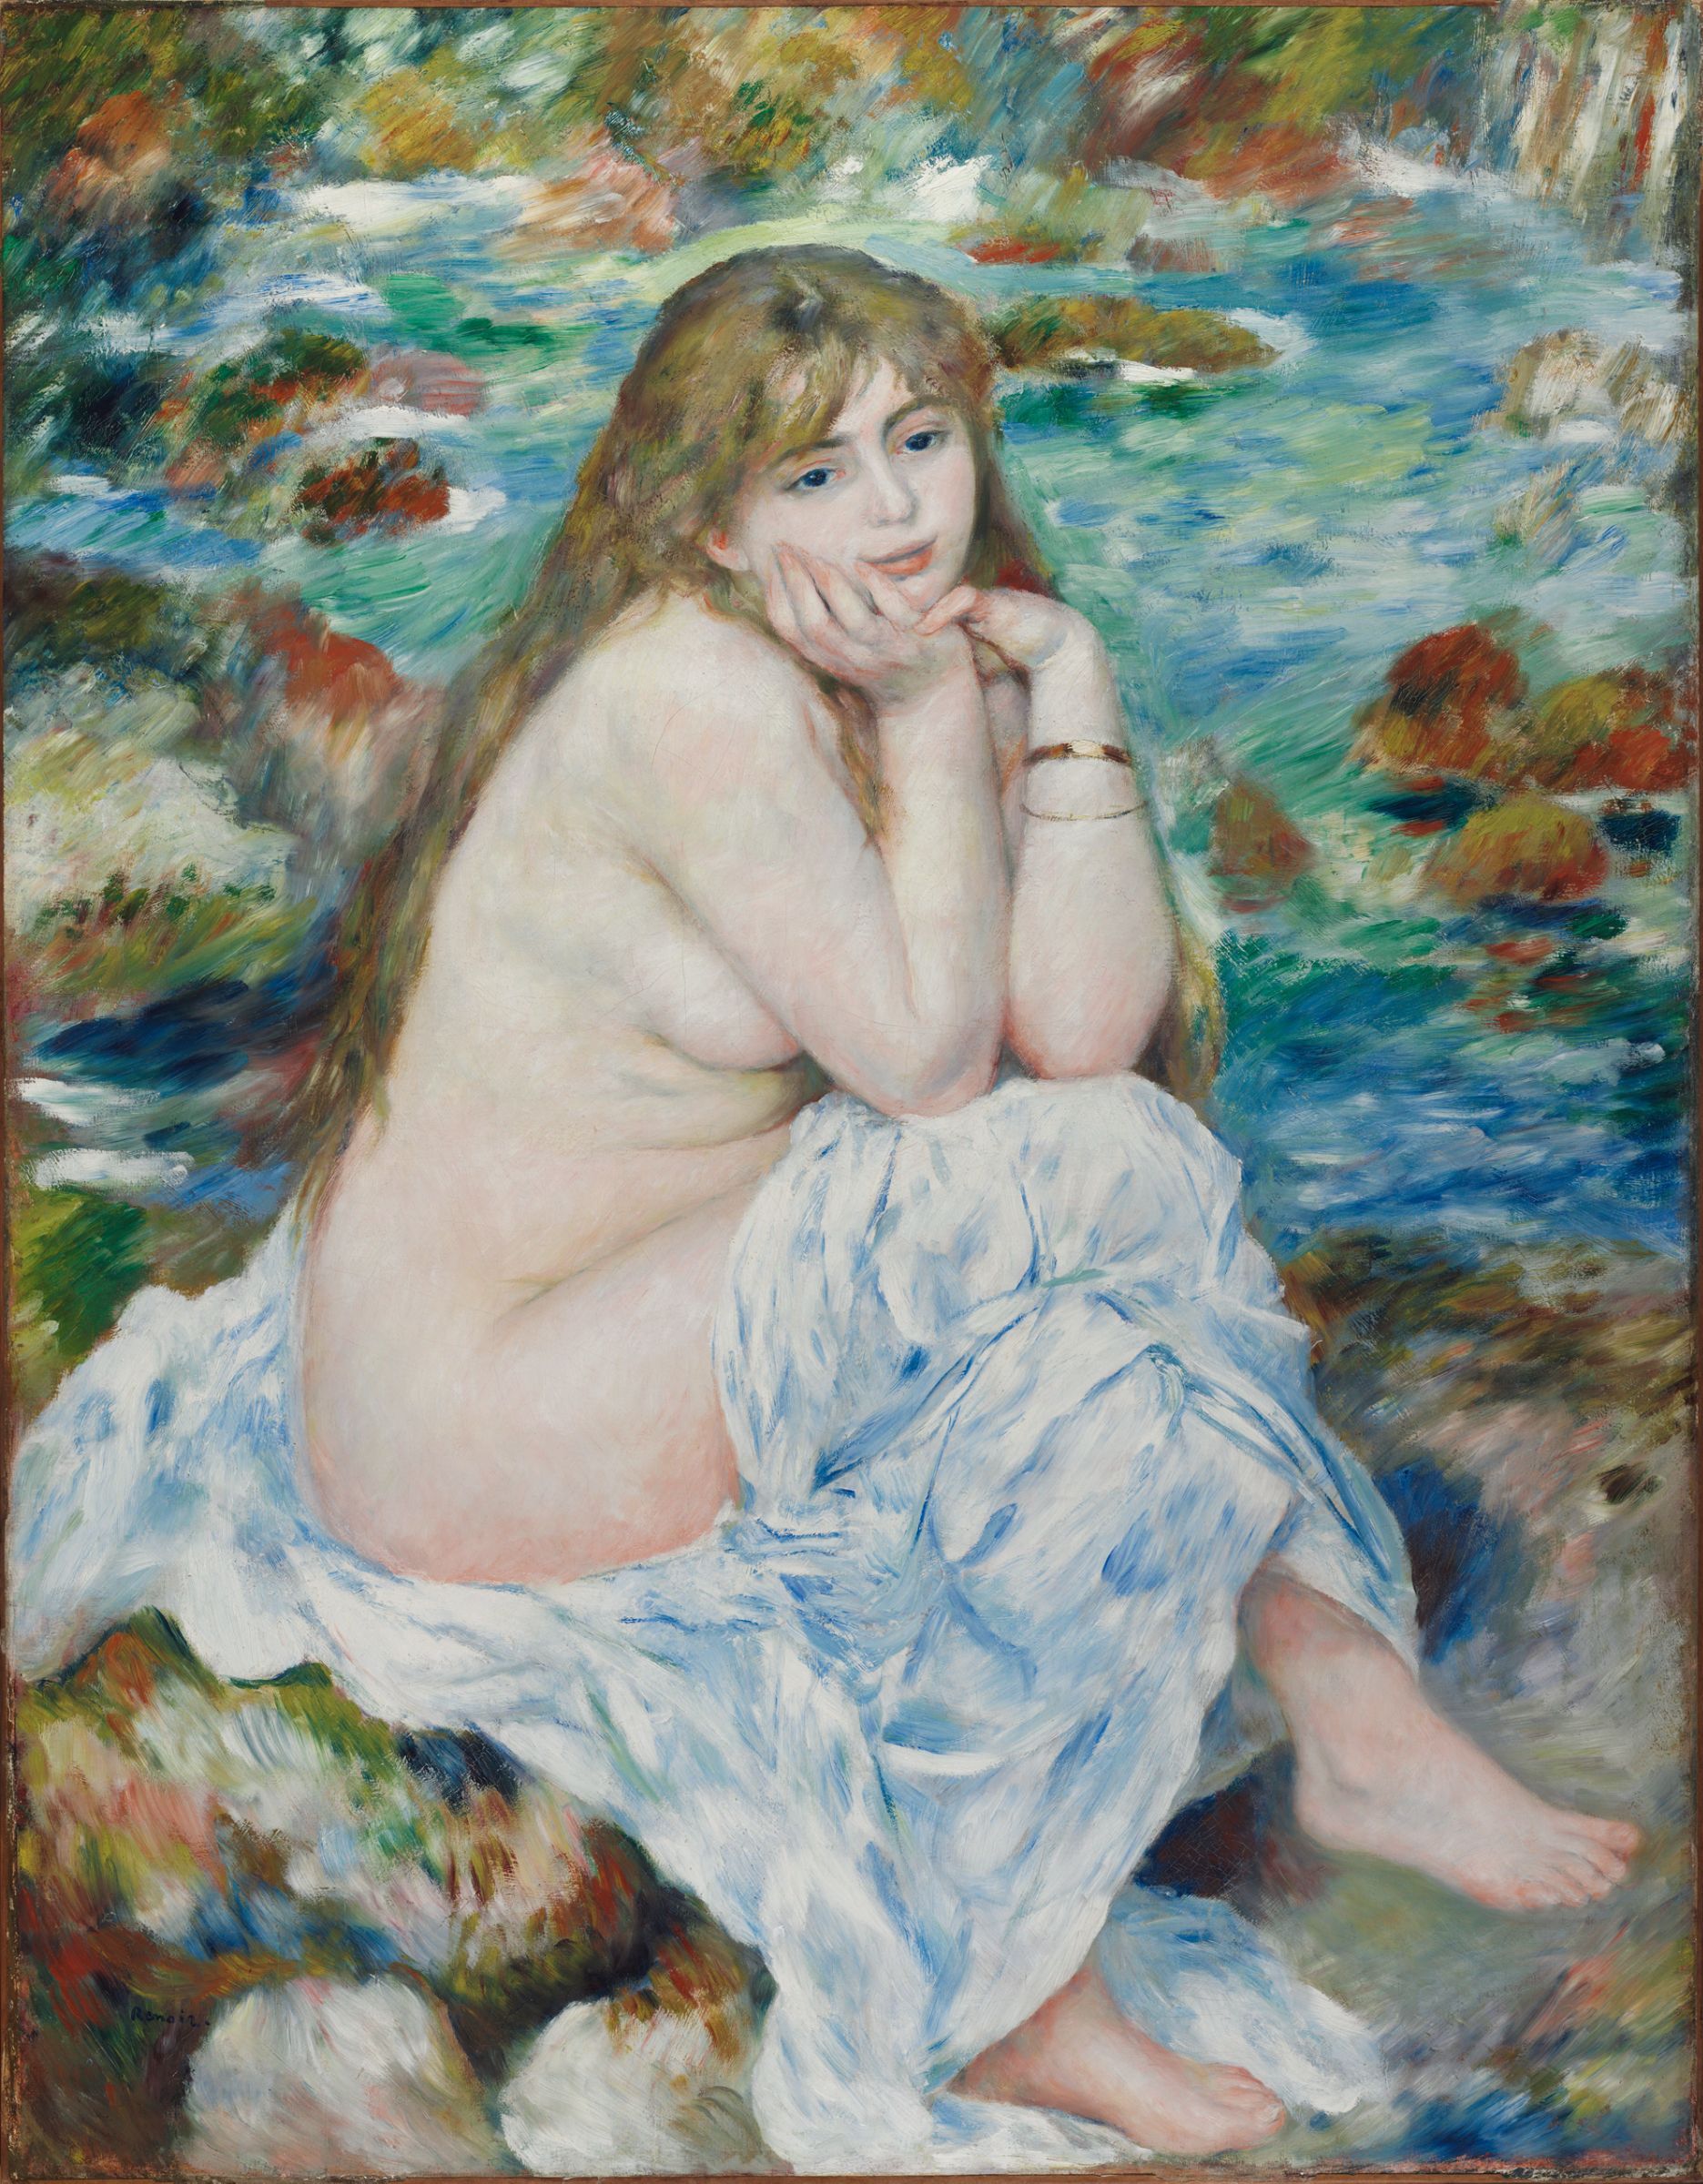 المُغتسلة الجالسة by Pierre-Auguste Renoir - c. 1883-1884 - 93.0 x 119.7 سم  